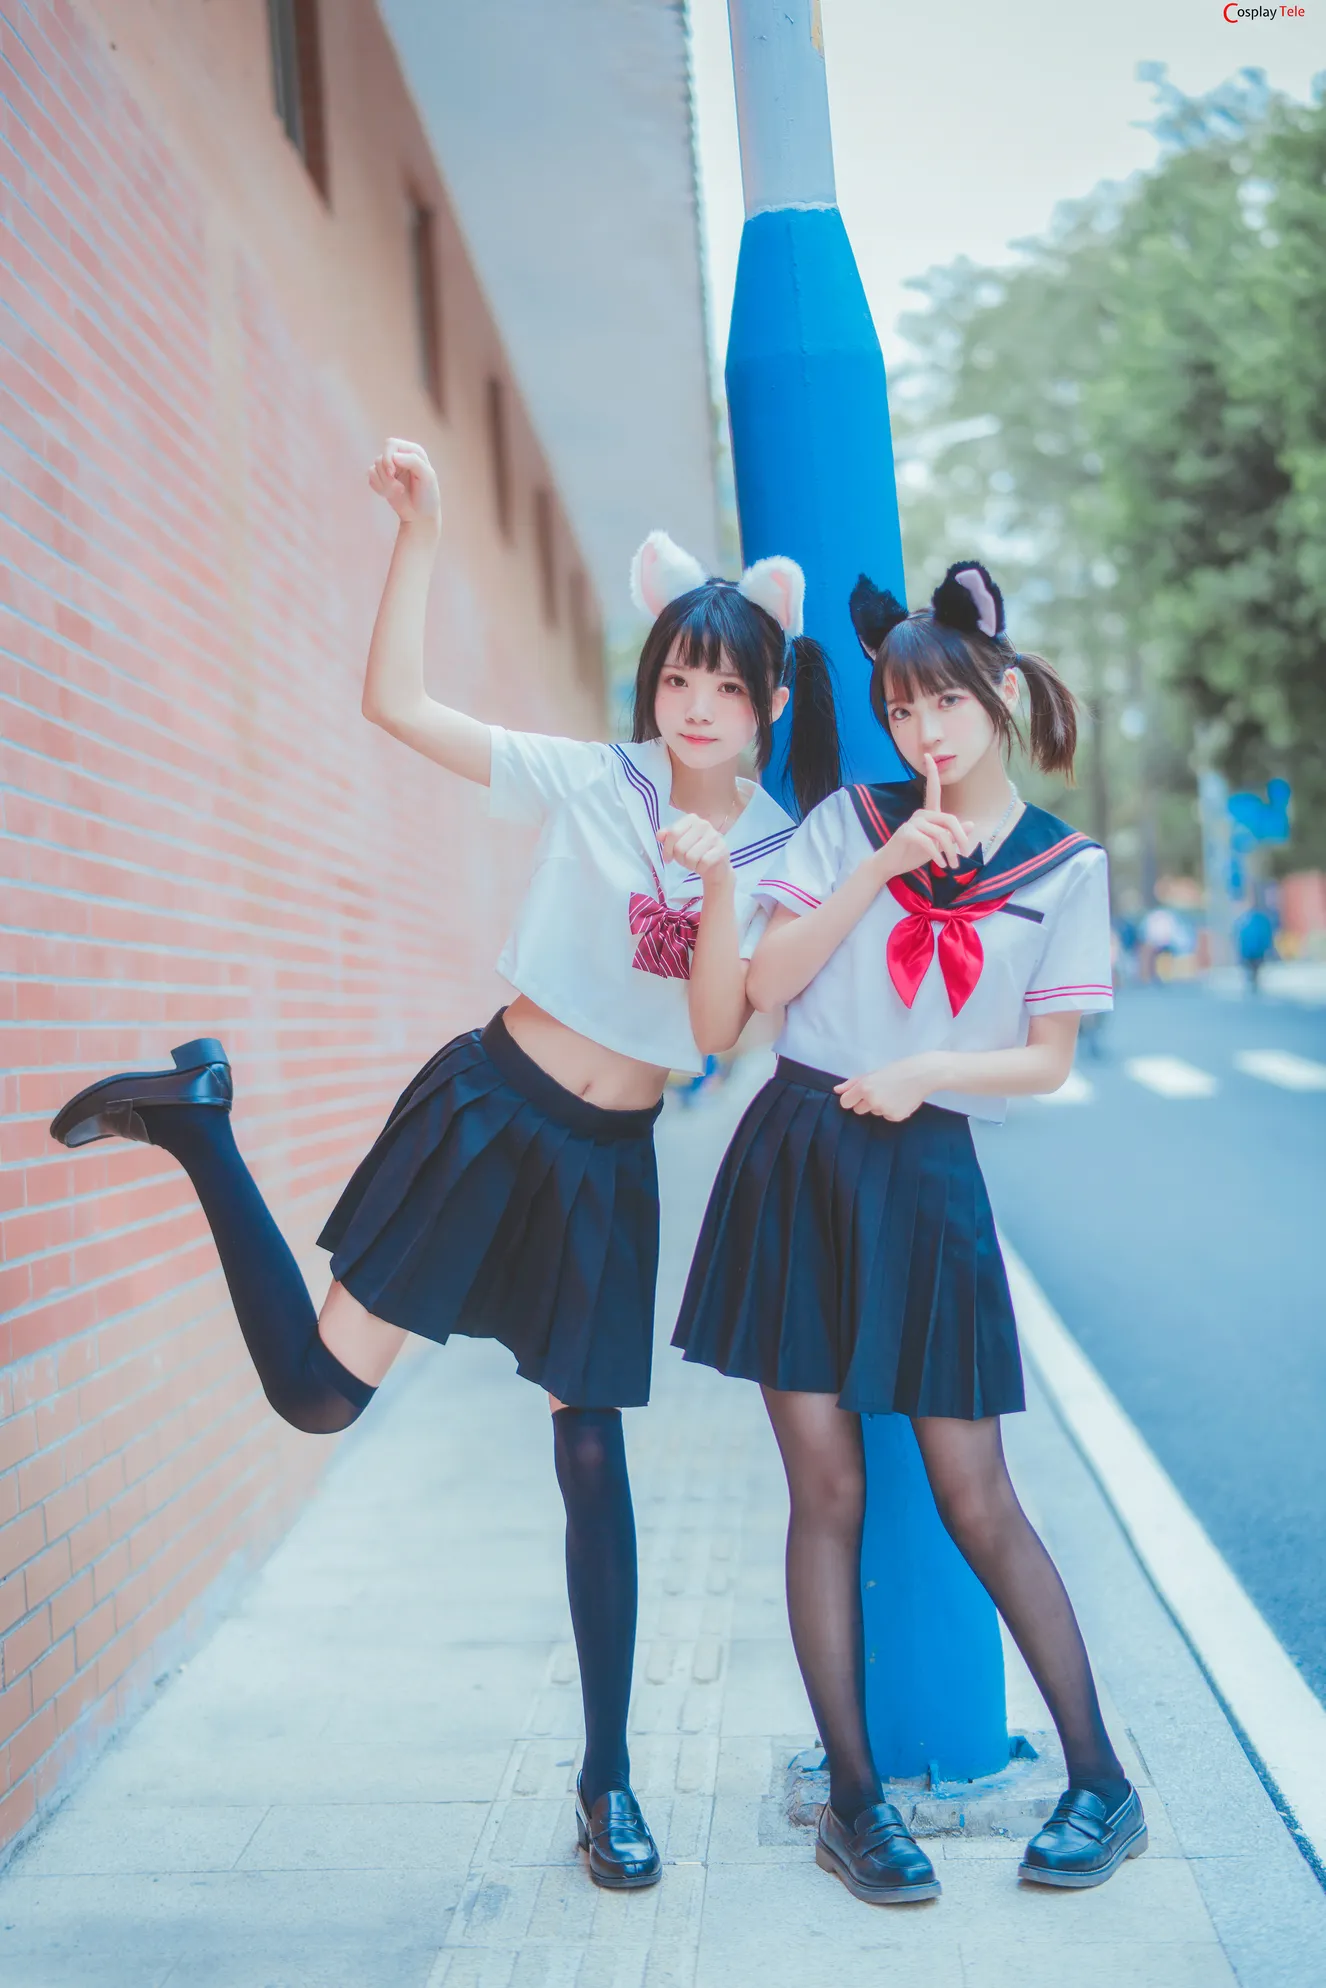 Cherry Neko (桜桃喵) cosplay Cat-eared School Girl “33 photos” 1110